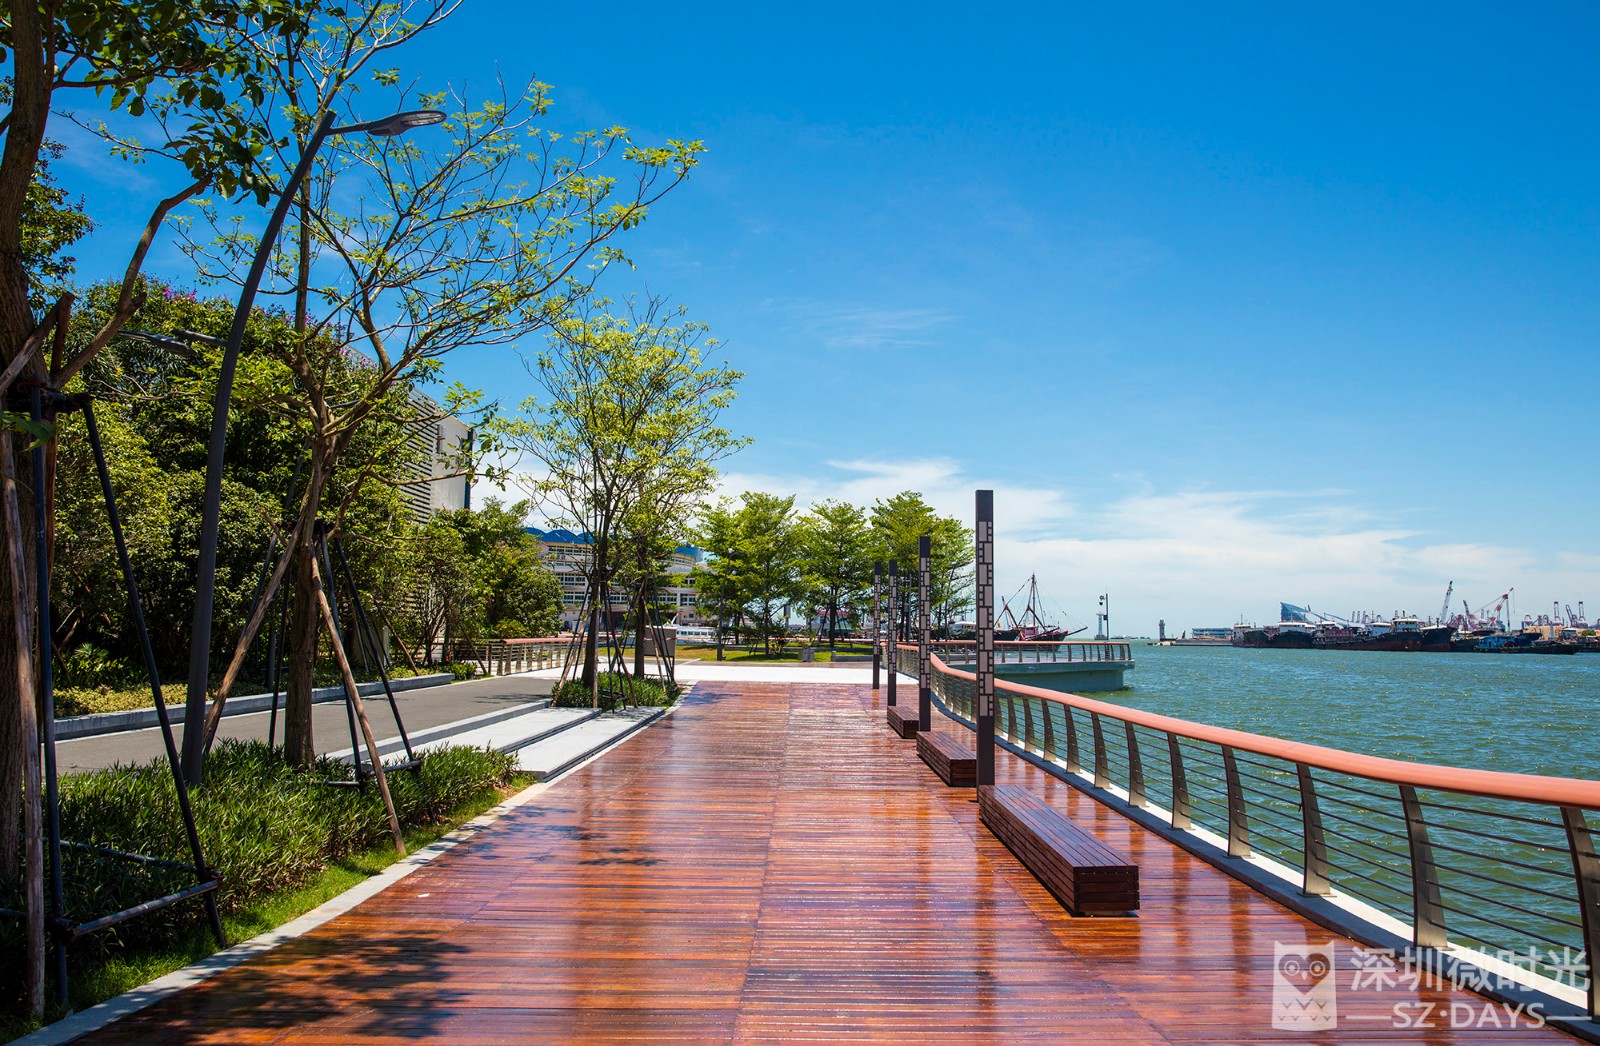 6km无敌海景!这段全新的海滨栈道,即将成为深圳最新拍照圣地!